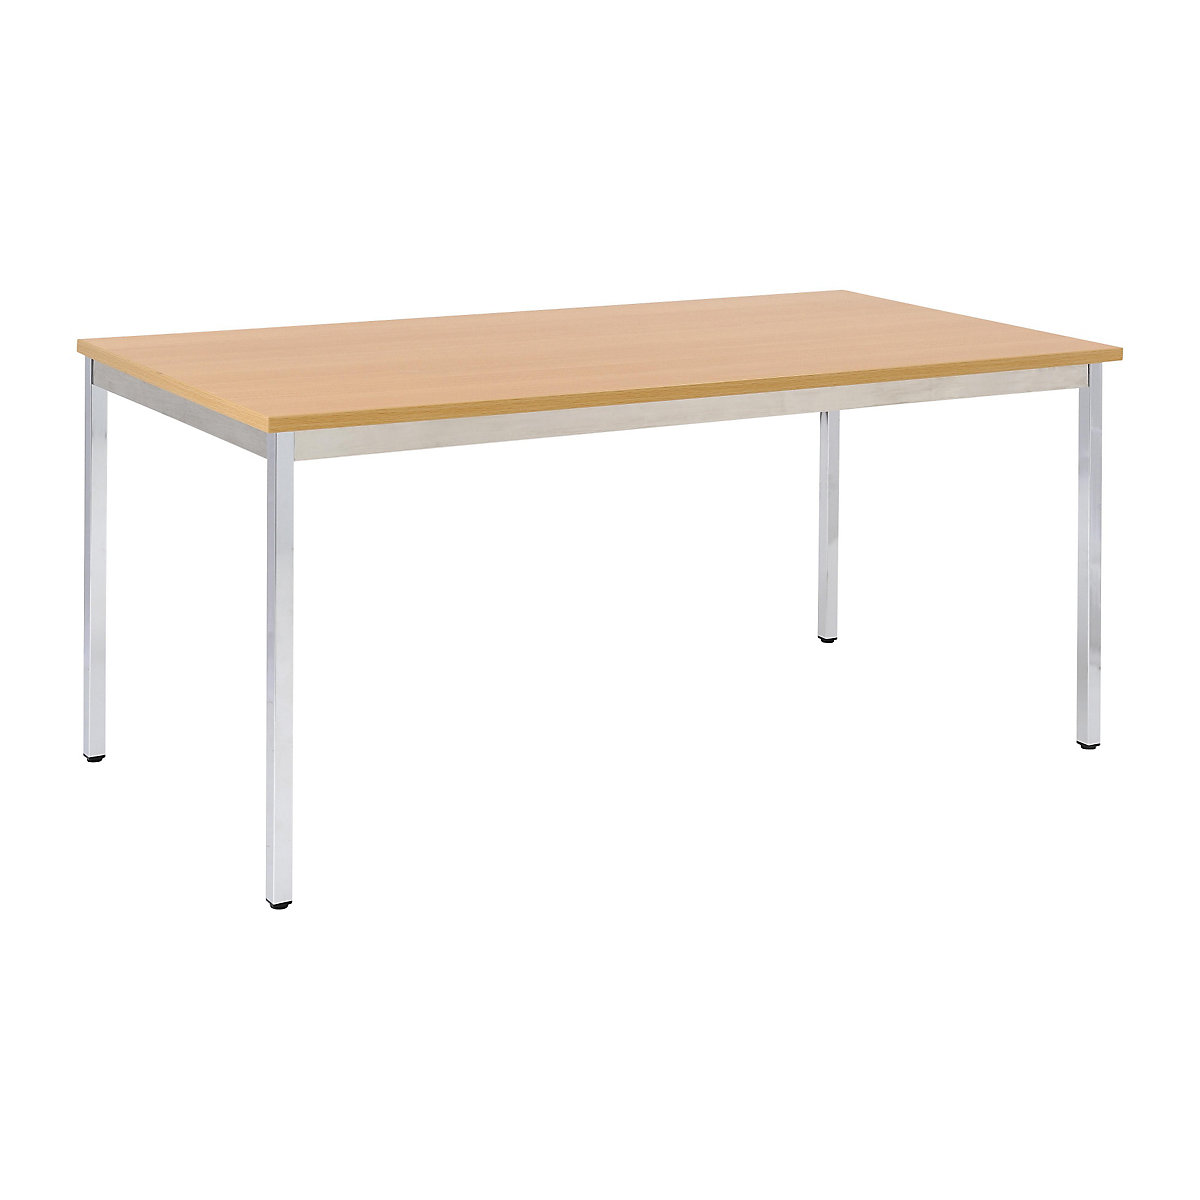 Univerzális asztal – eurokraft basic, négyszög alakú, szé x ma 1200 x 740 mm, mélység 600 mm, bükk-dekor lap, krómozott váz-16